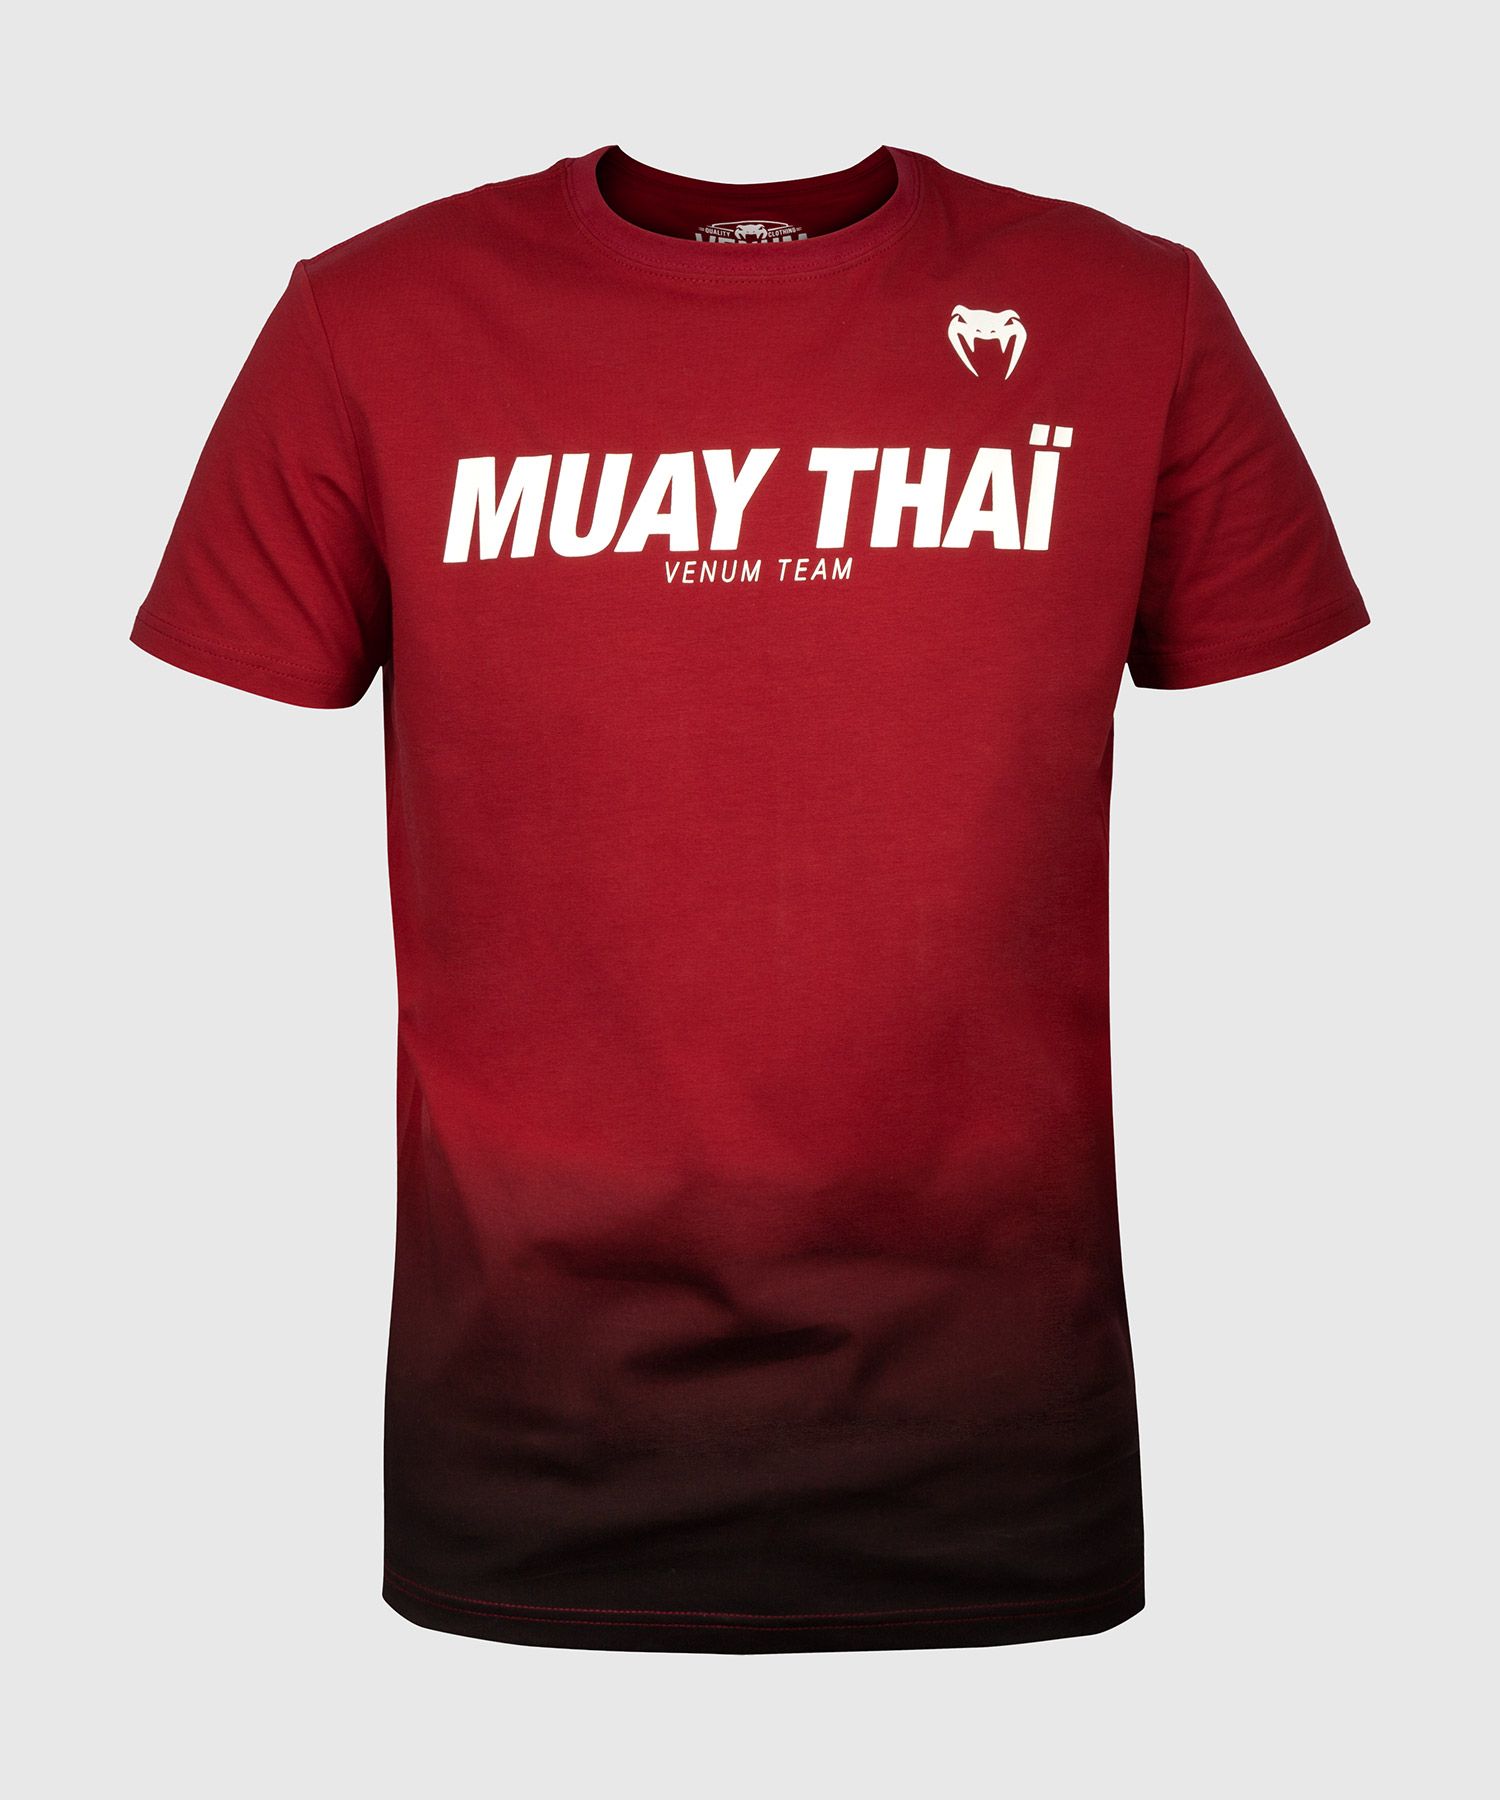 Camiseta Muay Thai VT de Venum - Vino tinto/Negro